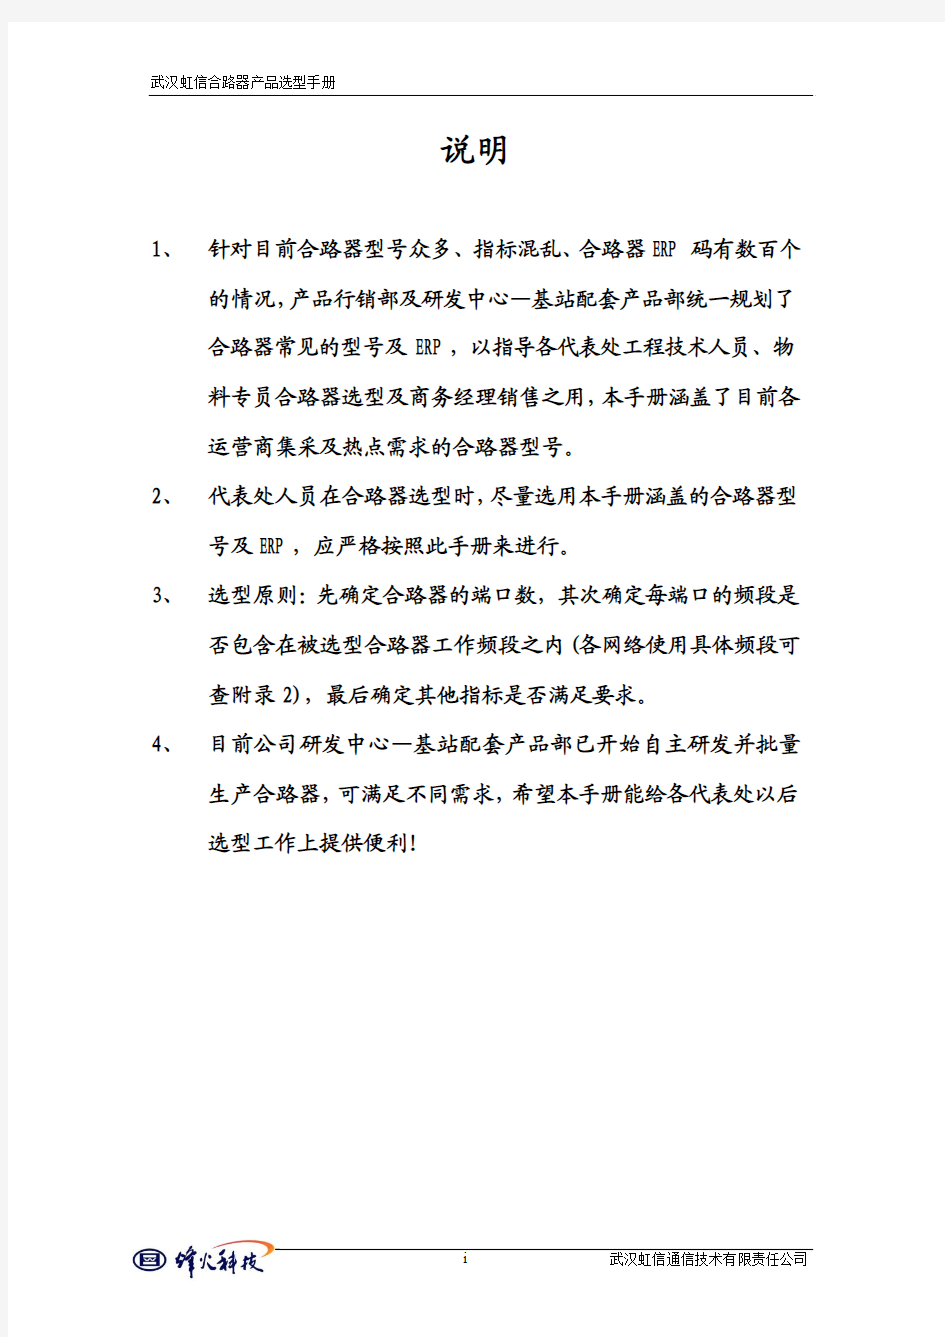 武汉虹信合路器选型手册2010.5.1(终)